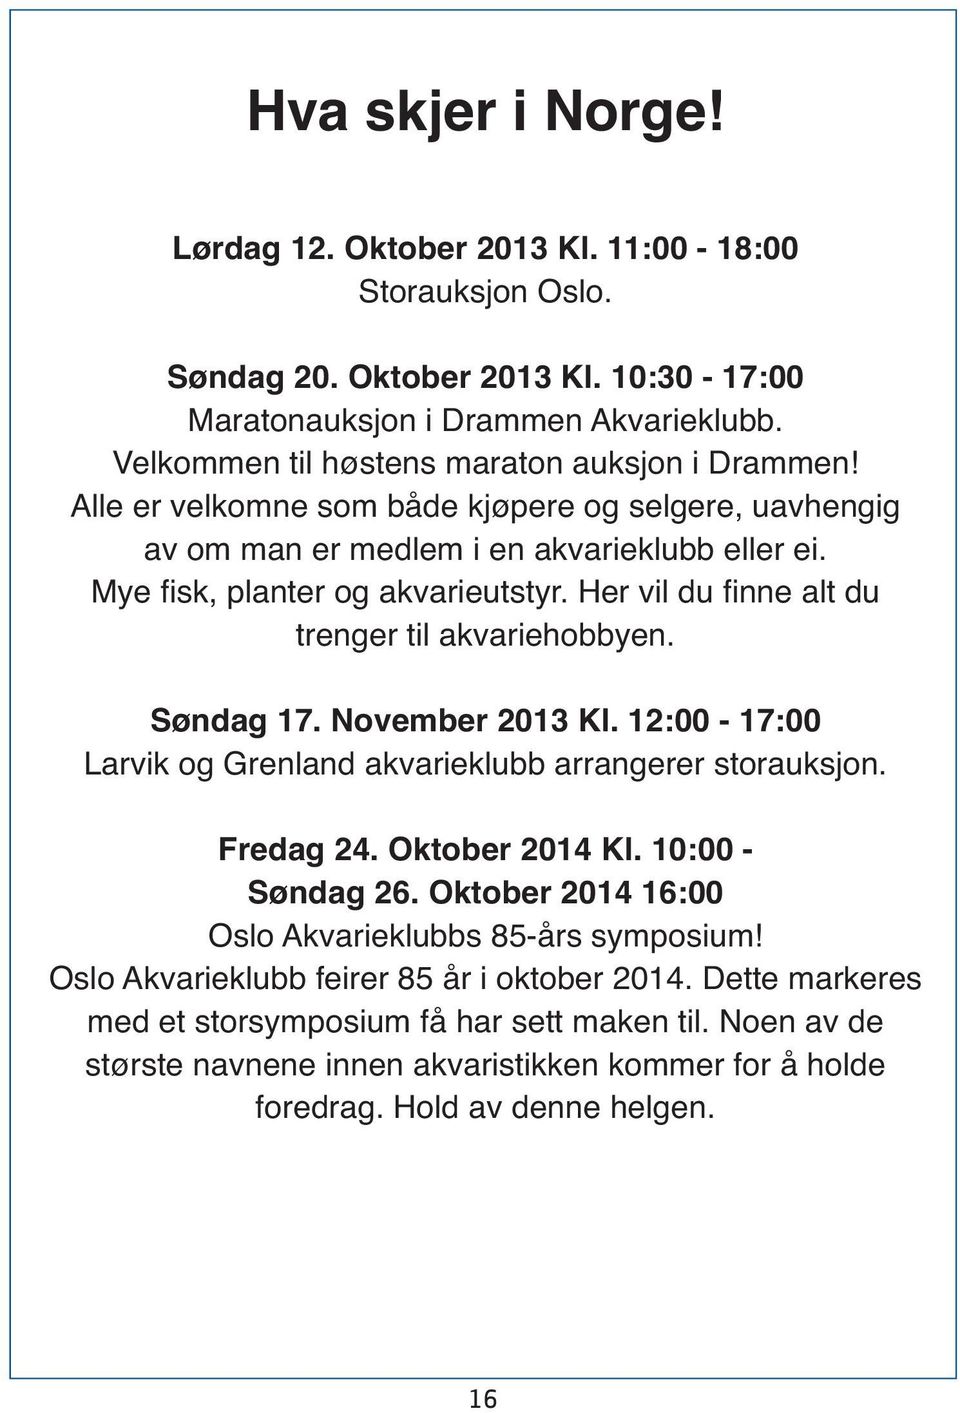 Her vil du finne alt du trenger til akvariehobbyen. Søndag 17. November 2013 Kl. 12:00-17:00 Larvik og Grenland akvarieklubb arrangerer storauksjon. Fredag 24. Oktober 2014 Kl. 10:00 - Søndag 26.